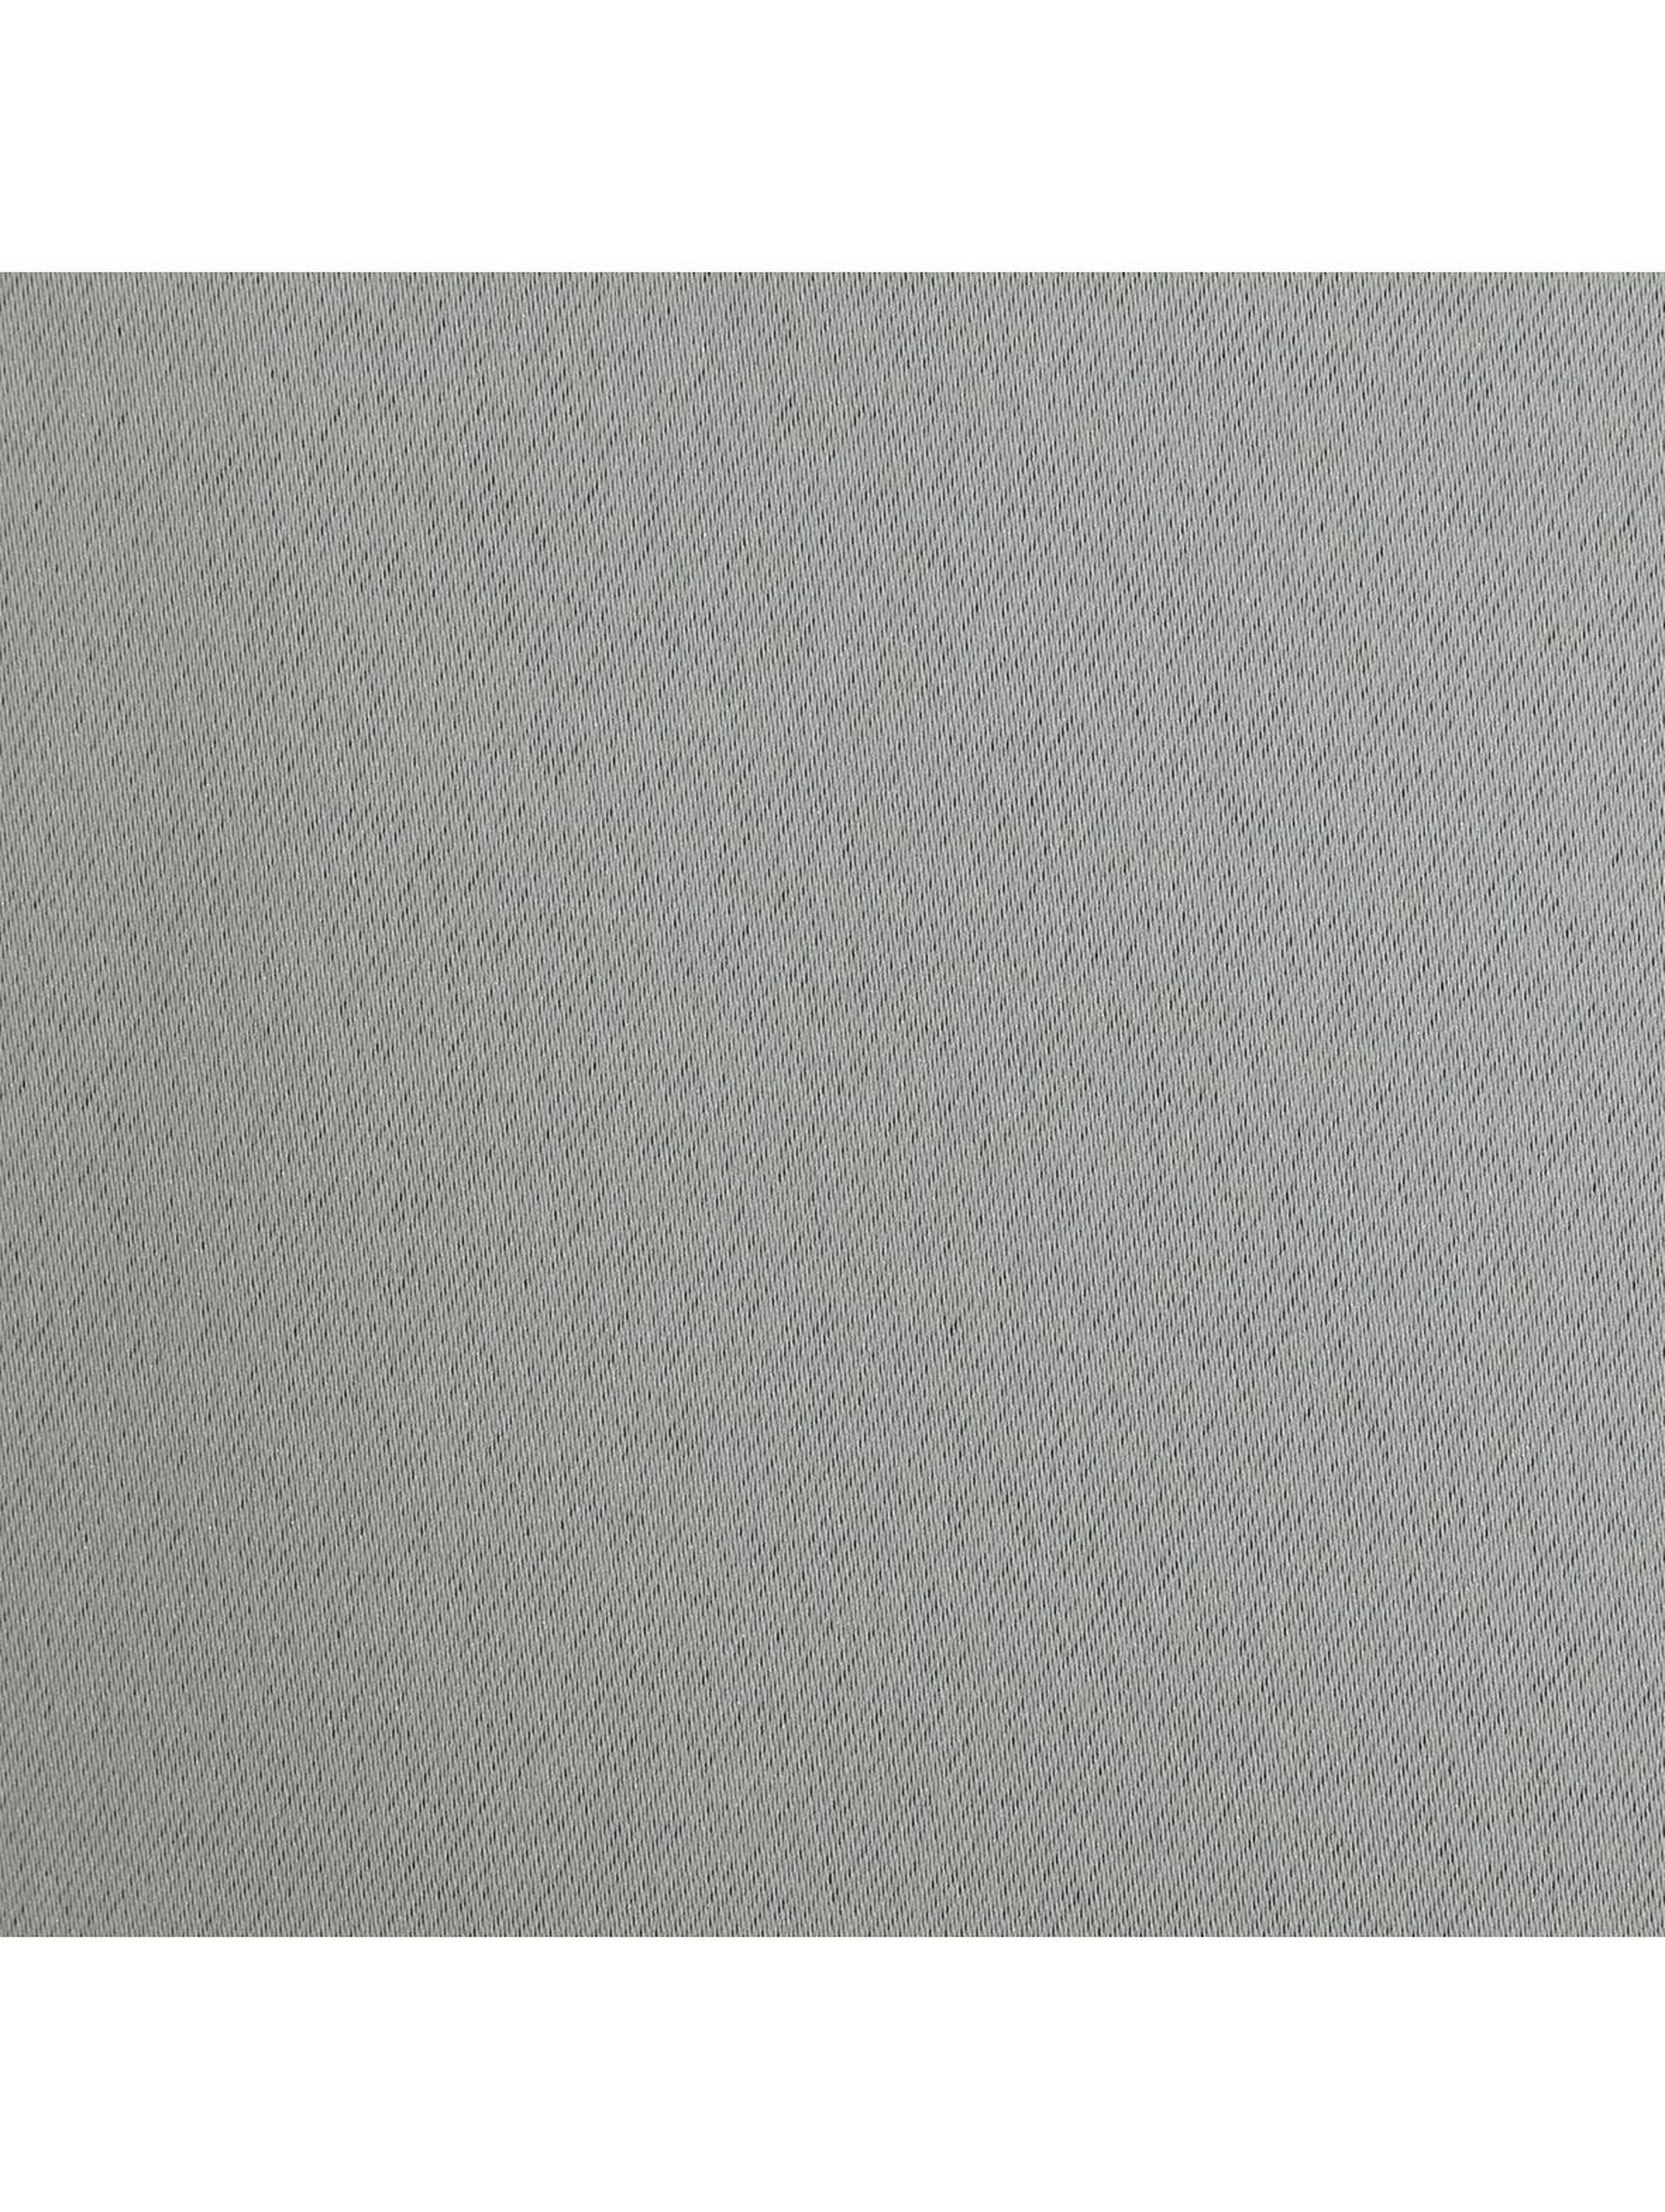 Zasłona jednokolorowa - szara - 135x250cm